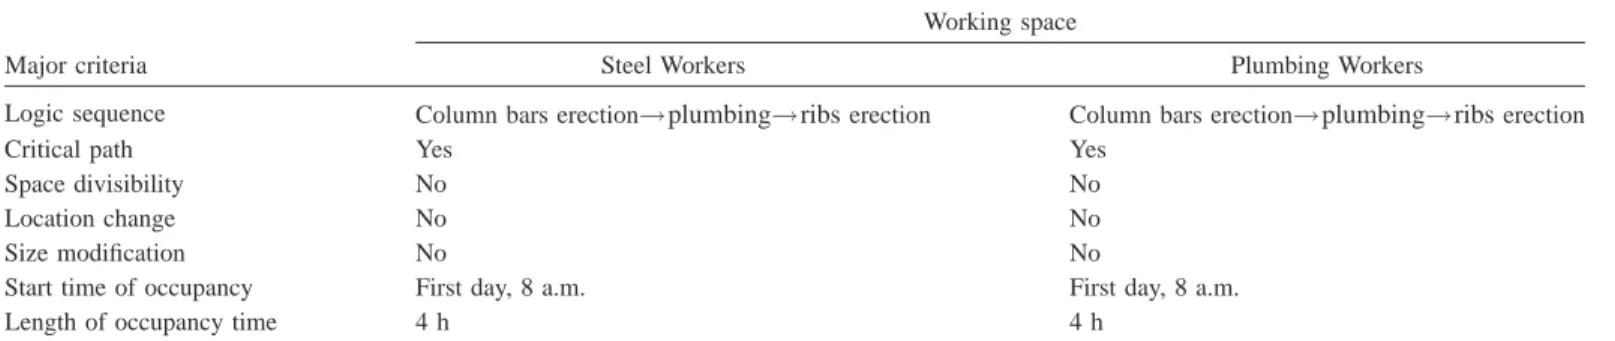 Table 4. Characteristics for Conflict 7-1 共Steel Workers versus Plumbing Workers兲